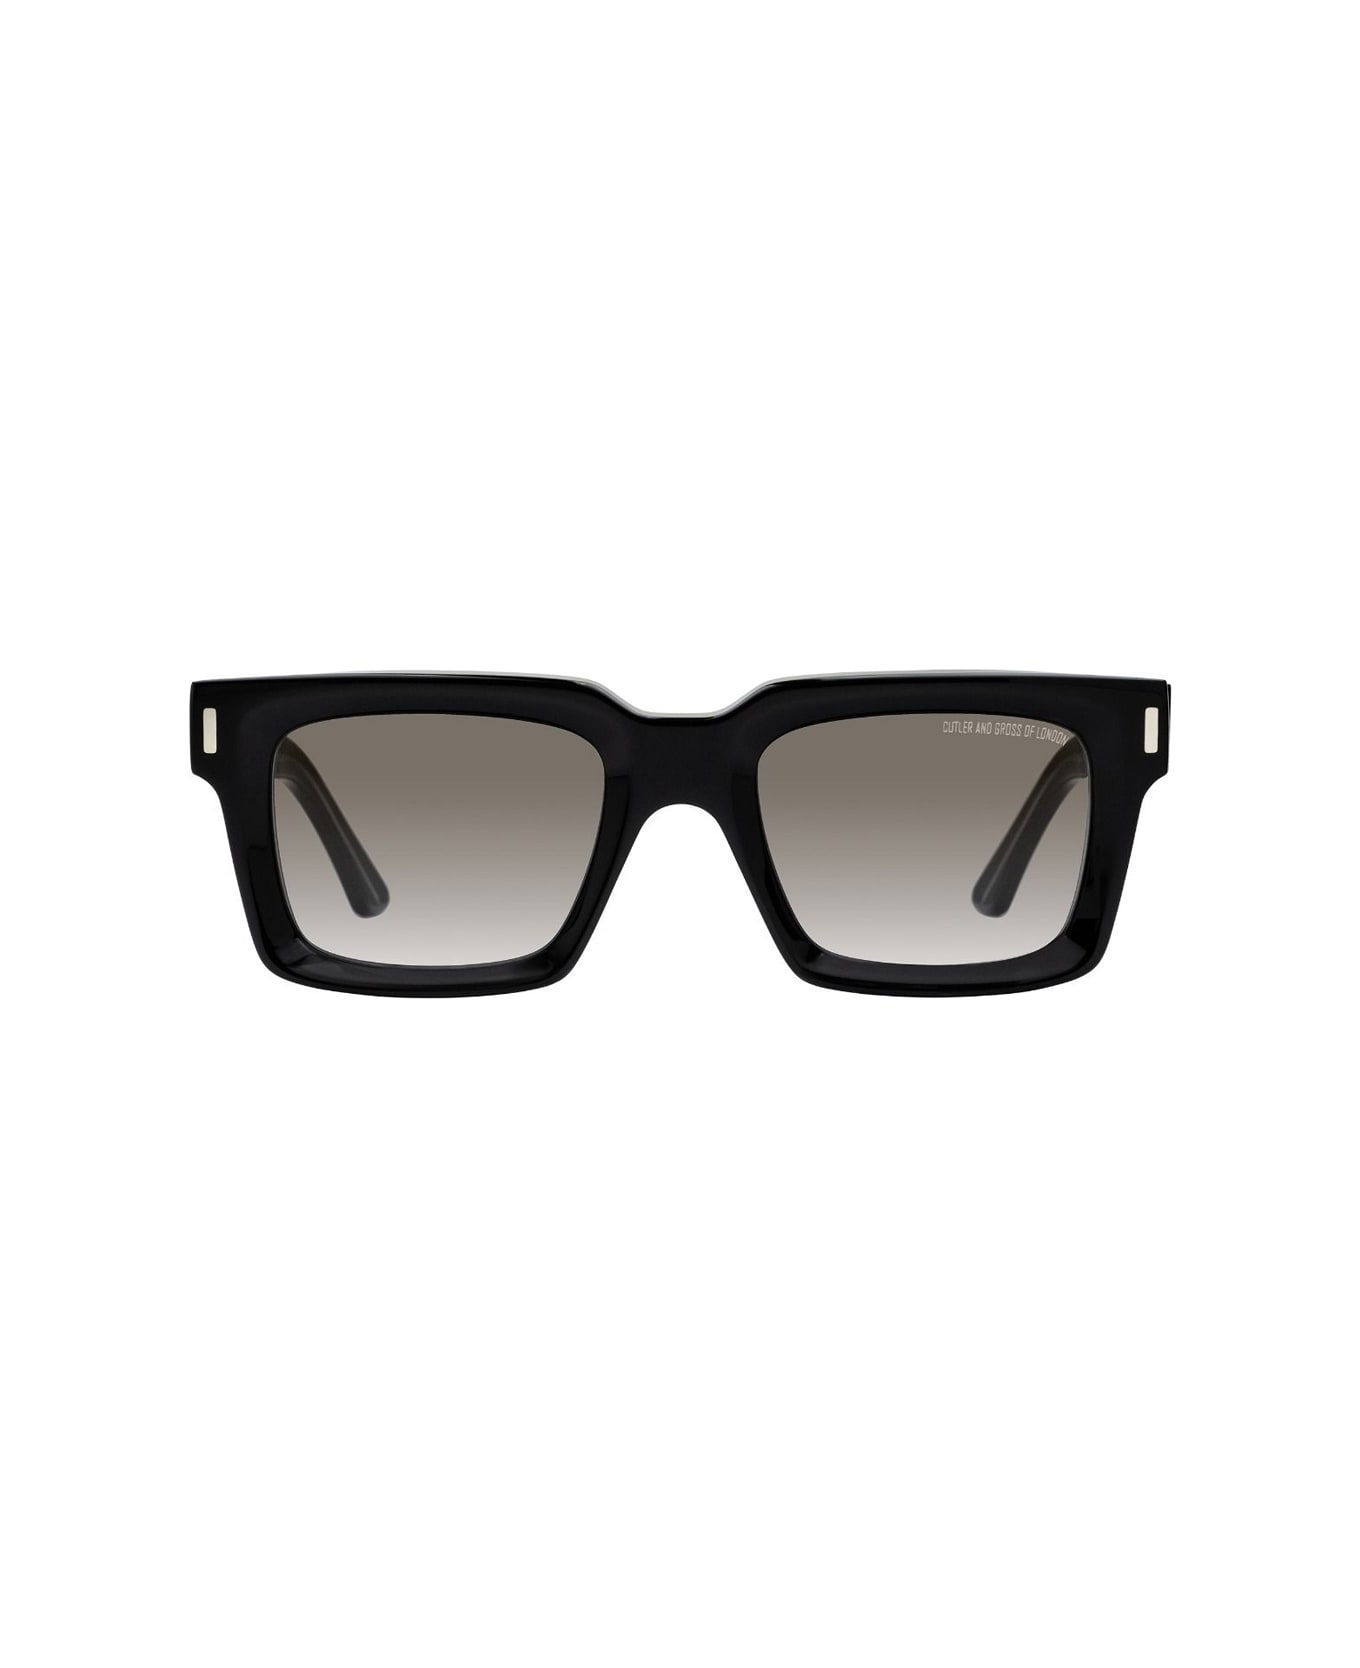 Cutler and Gross 1386 01 Sunglasses - Nero サングラス